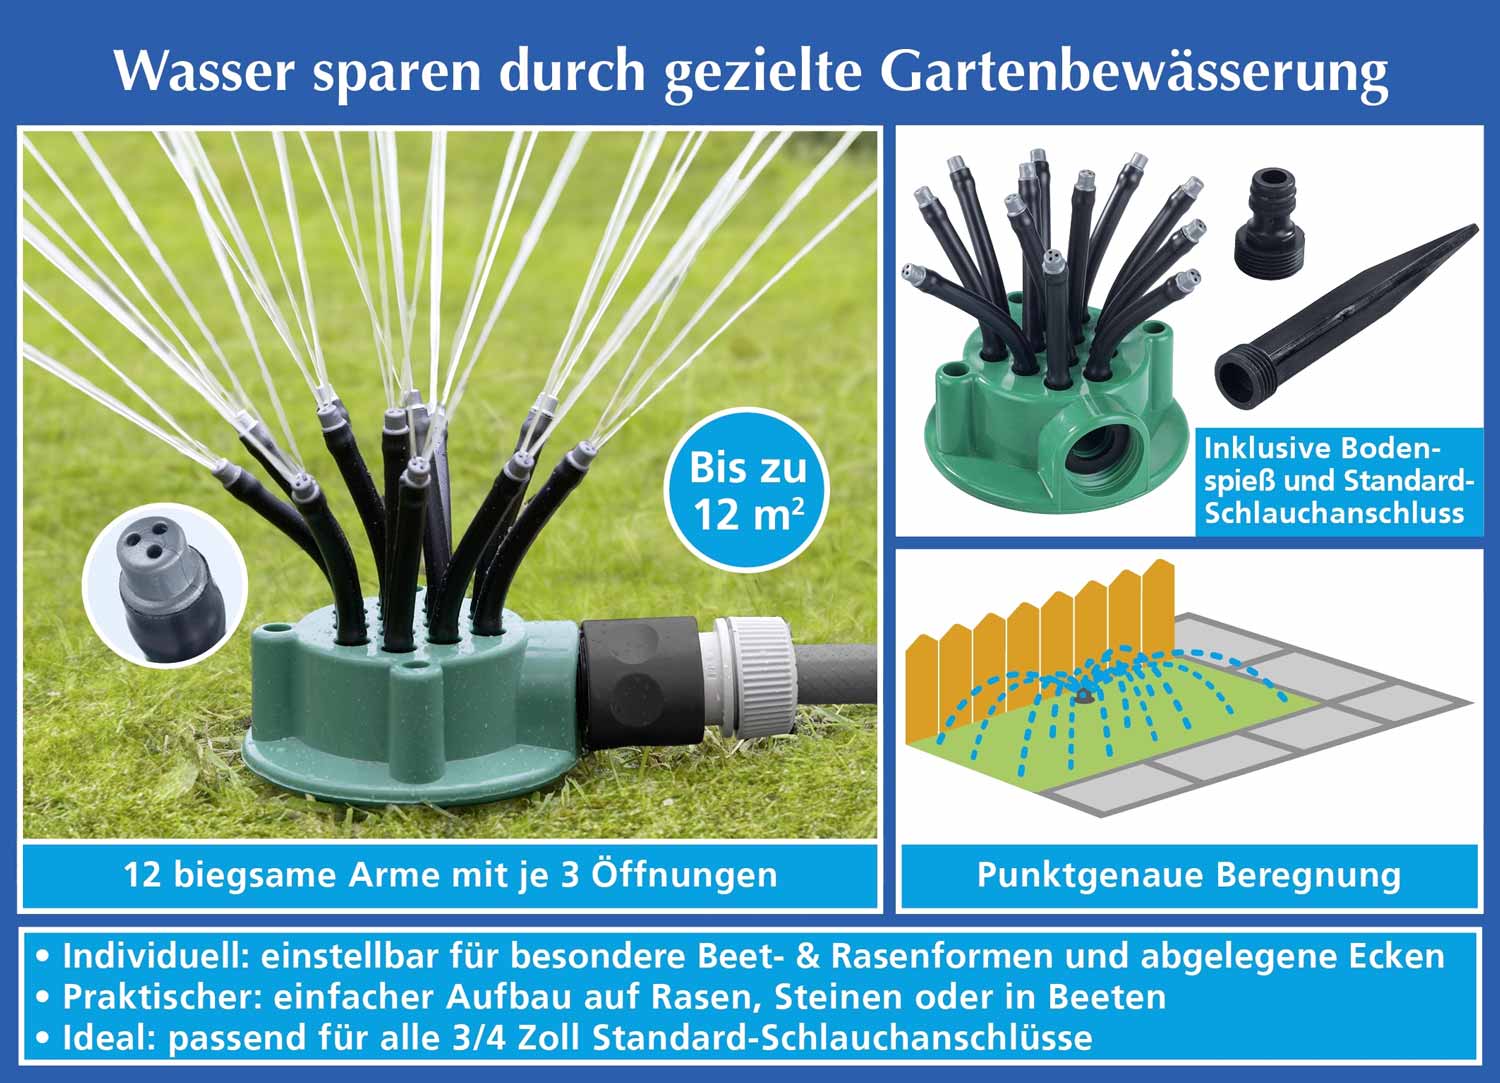 Tuinsproeier Flexi - bespaar water door gerichte tuinbesproeiing!